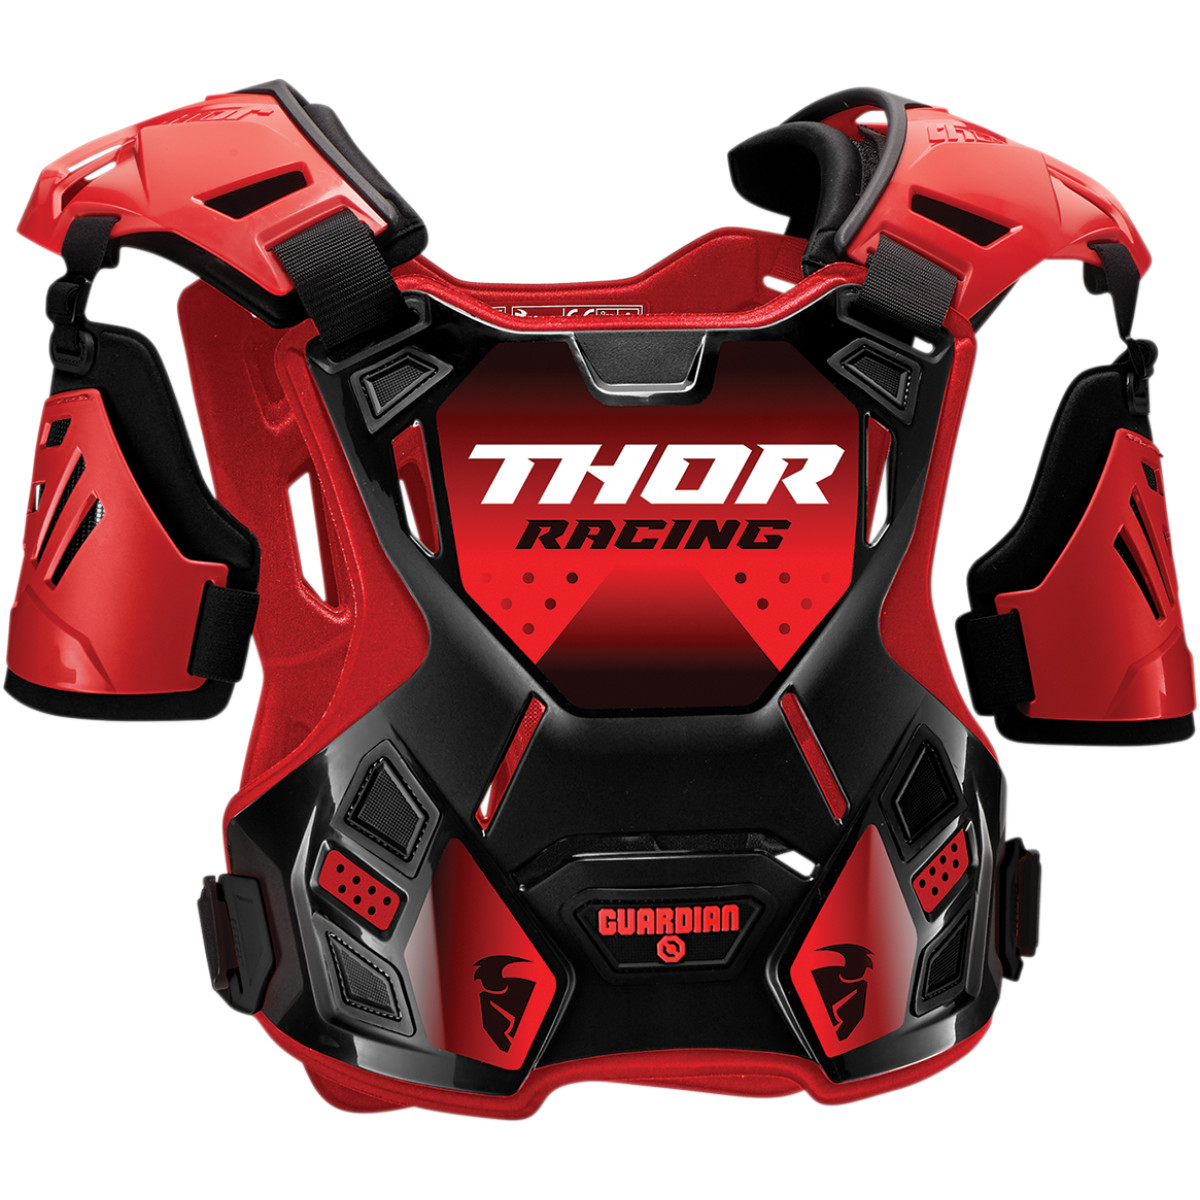 Protectie Corp Thor Guardian Culoare Rosu/negru Marime M/l